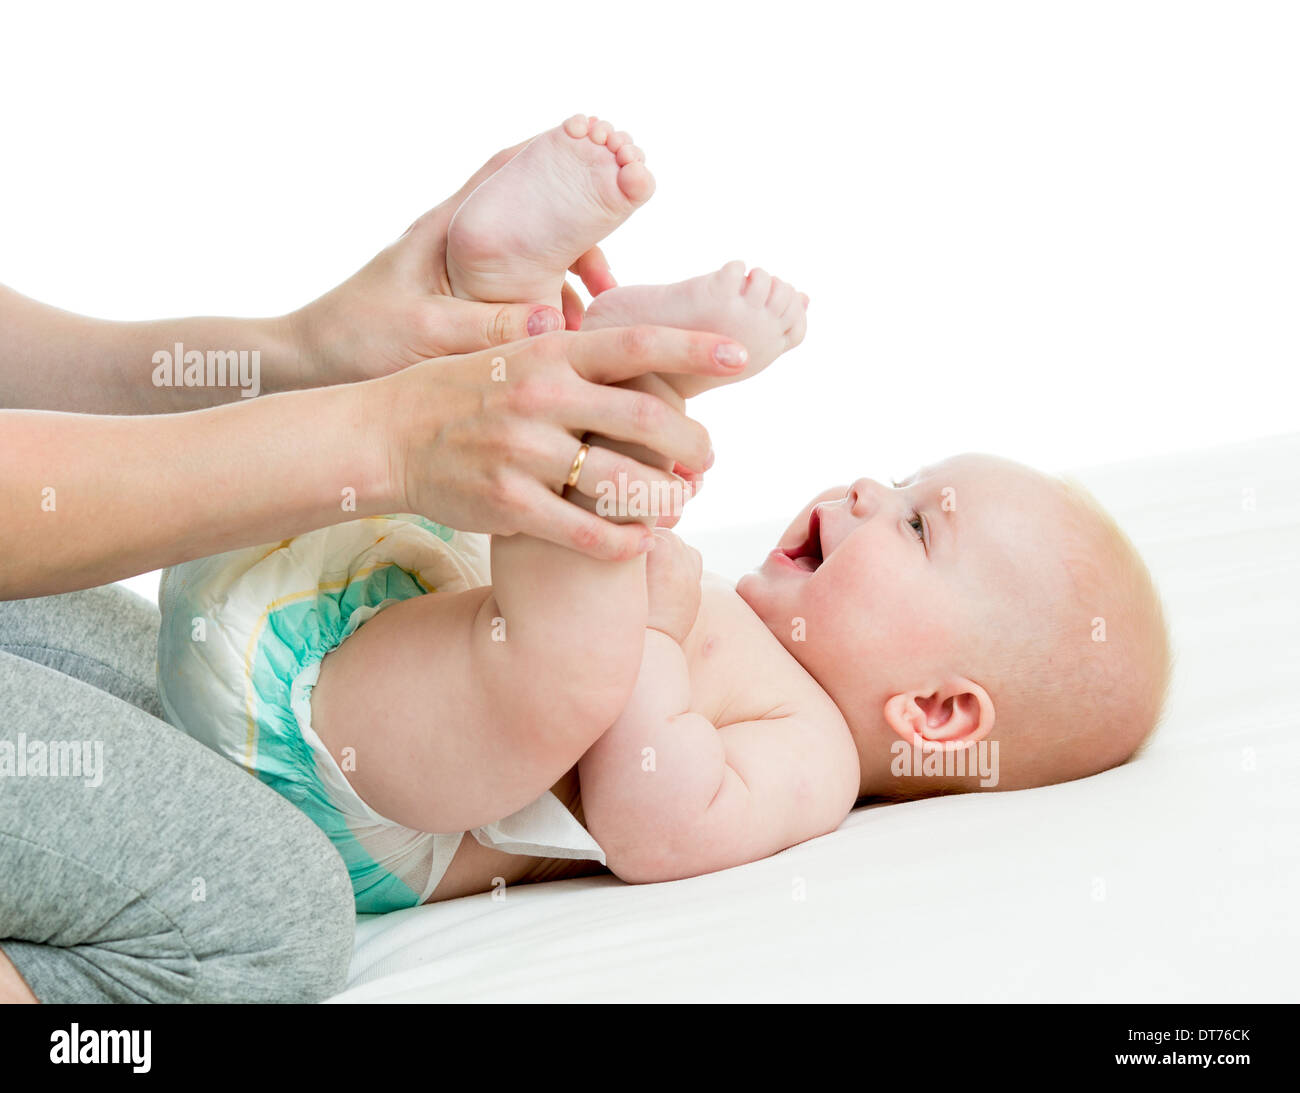 Почему дети поджимают ноги. Колики. Ноги к животу у новорожденных. Ножки к животику при коликах у новорожденных.